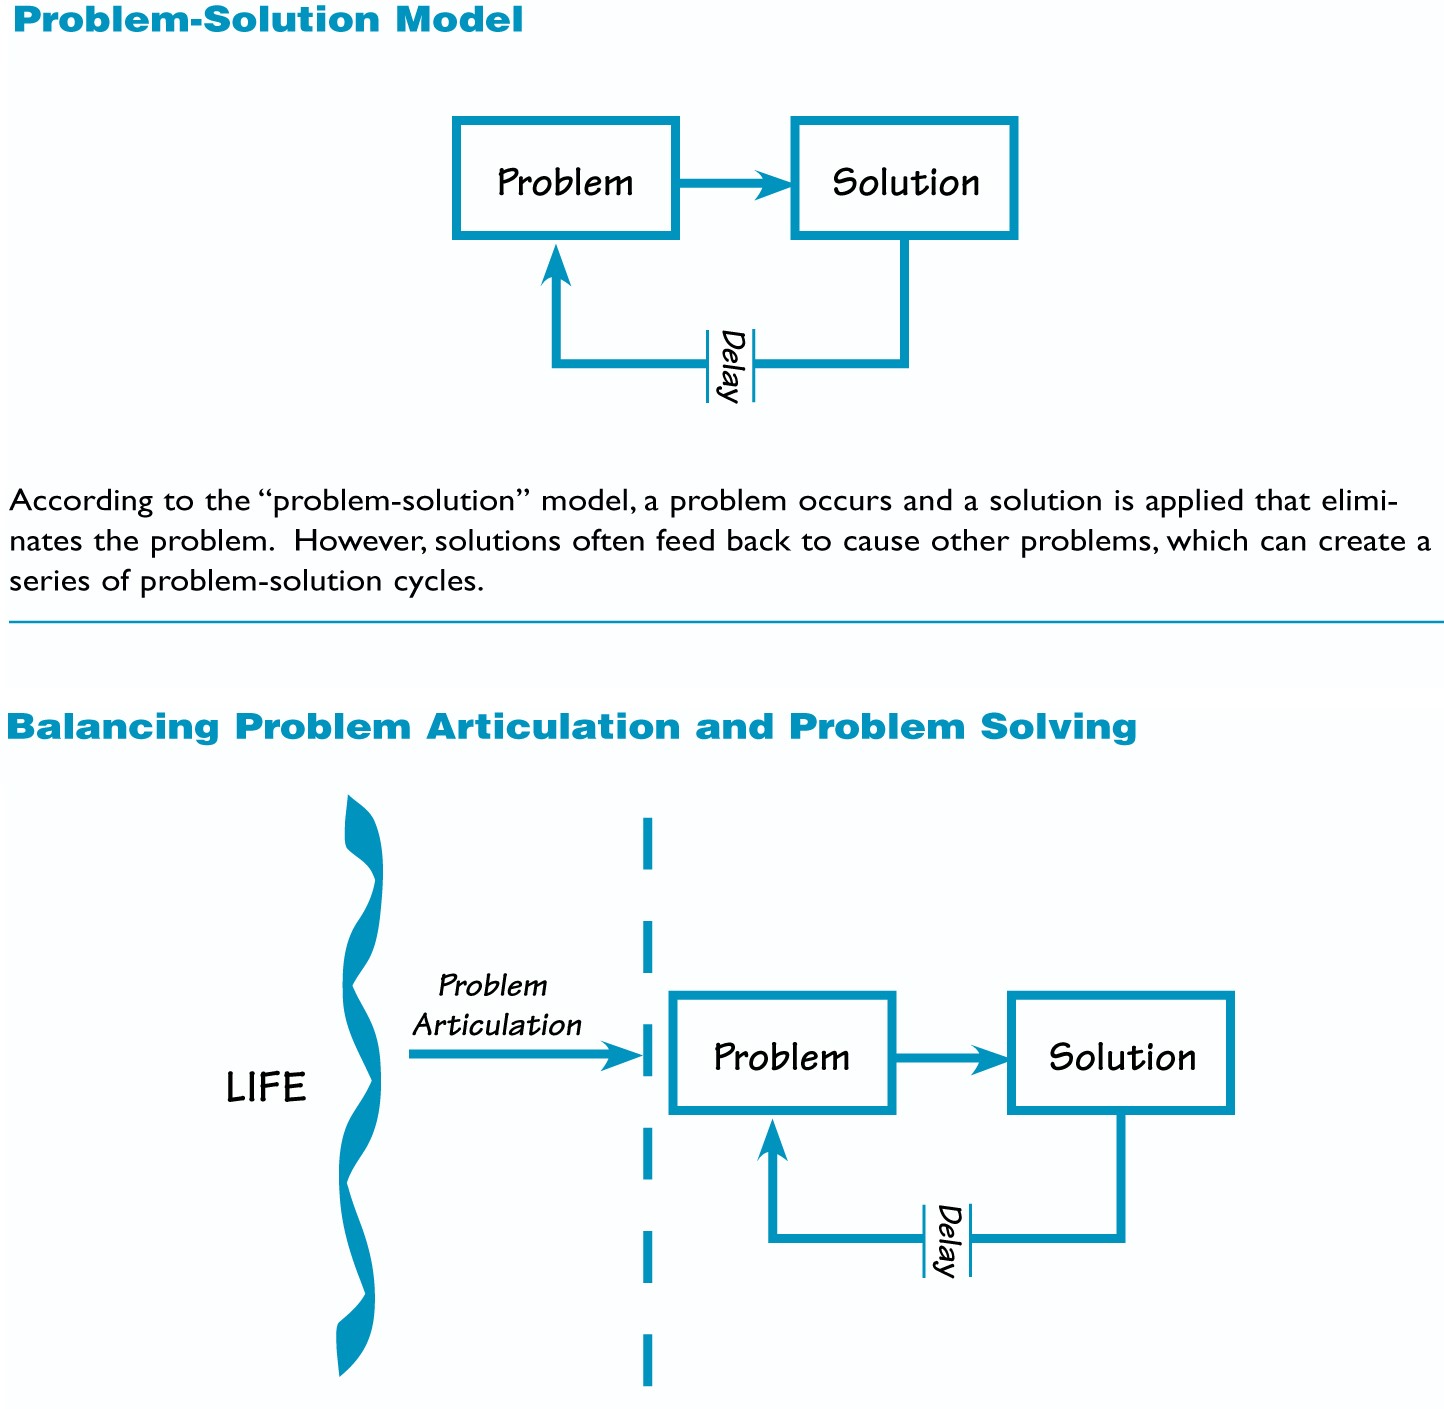 Problem-Solution Model